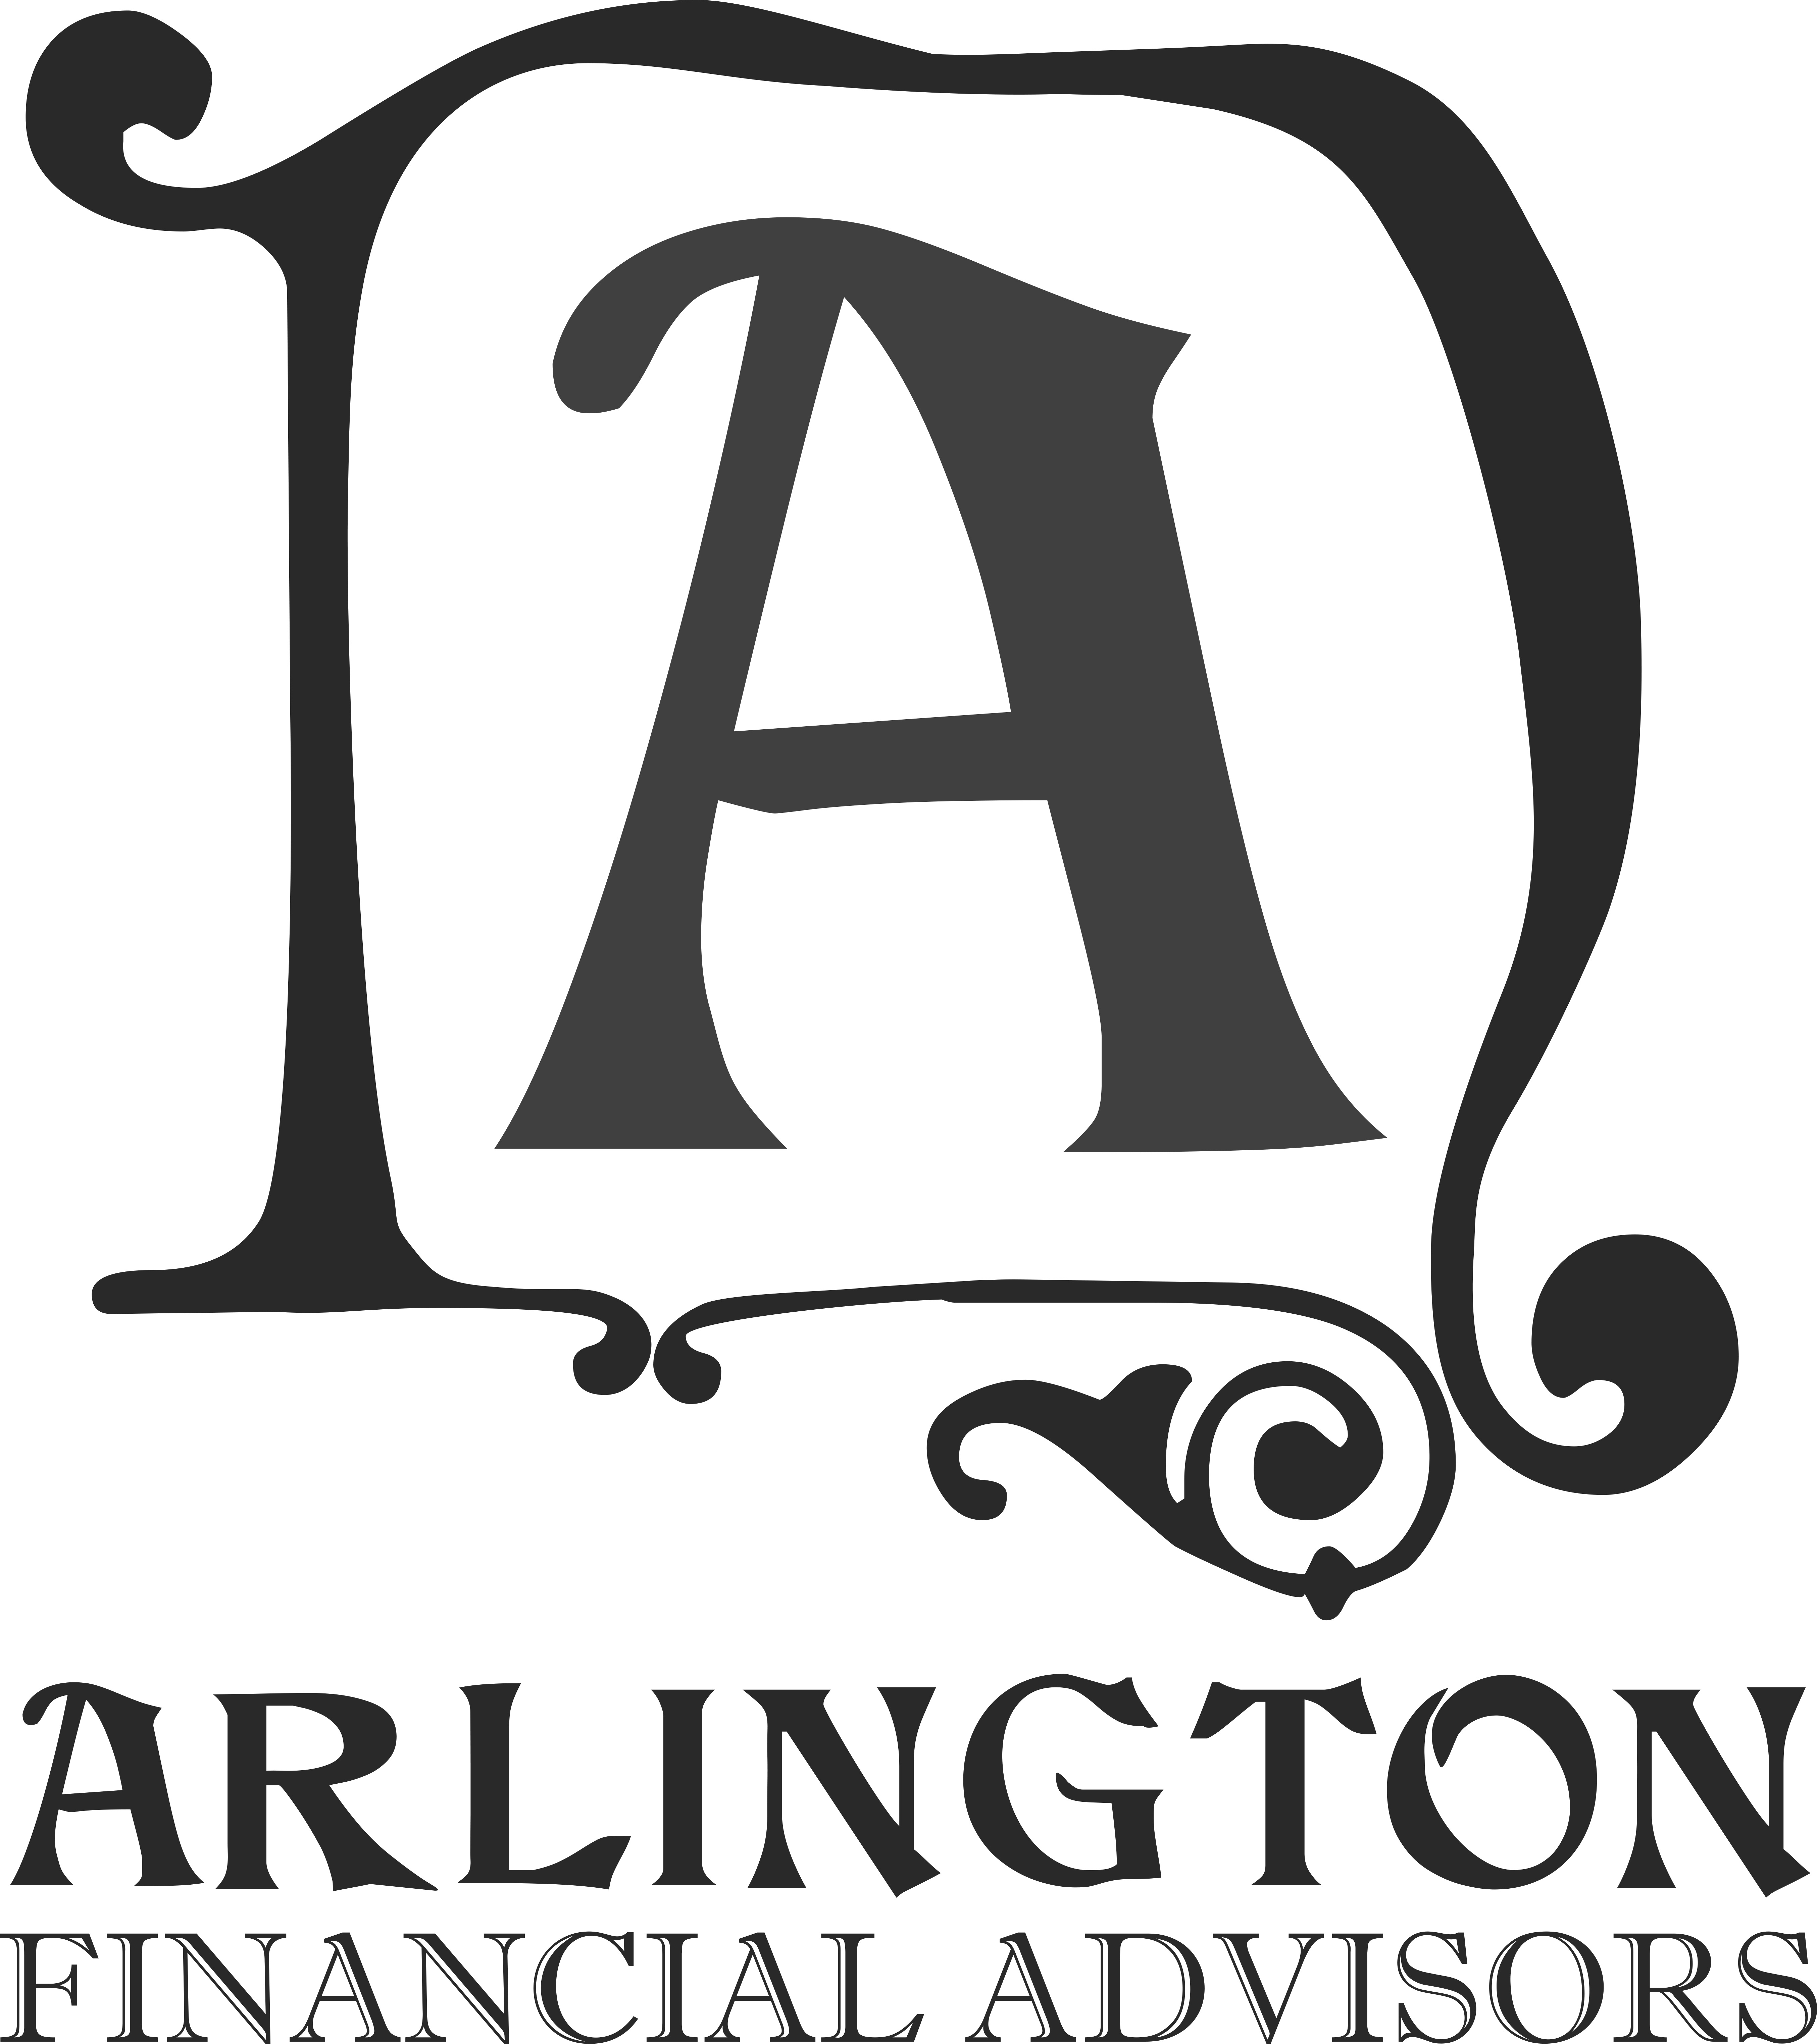 Arlington Financial Advisors